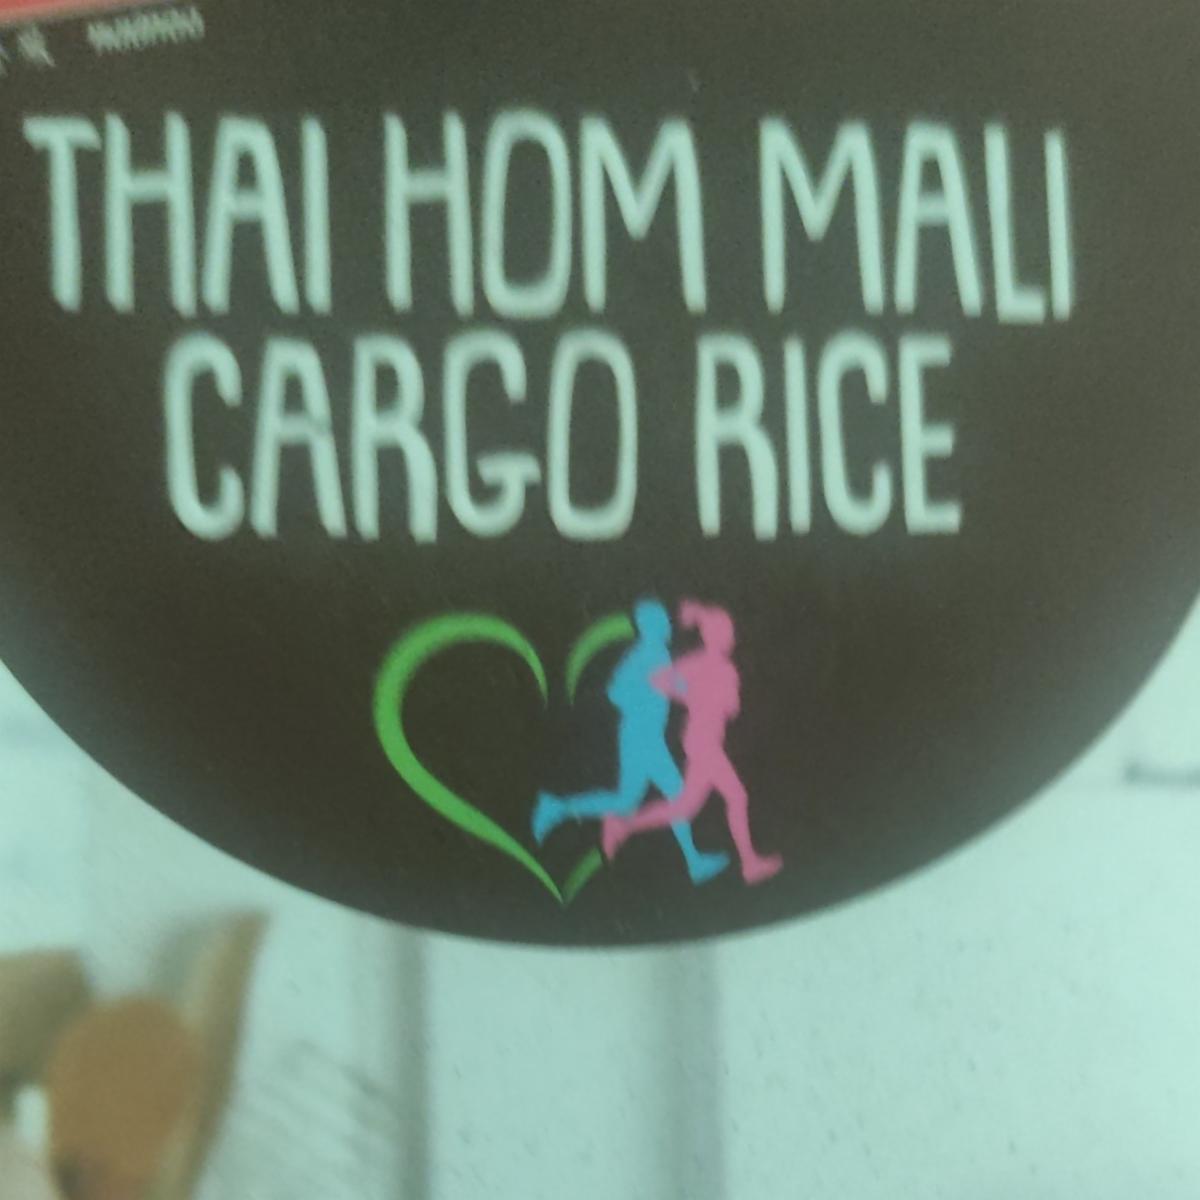 Fotografie - Thai Hom Mali Cargo Rice Golden Phoenix